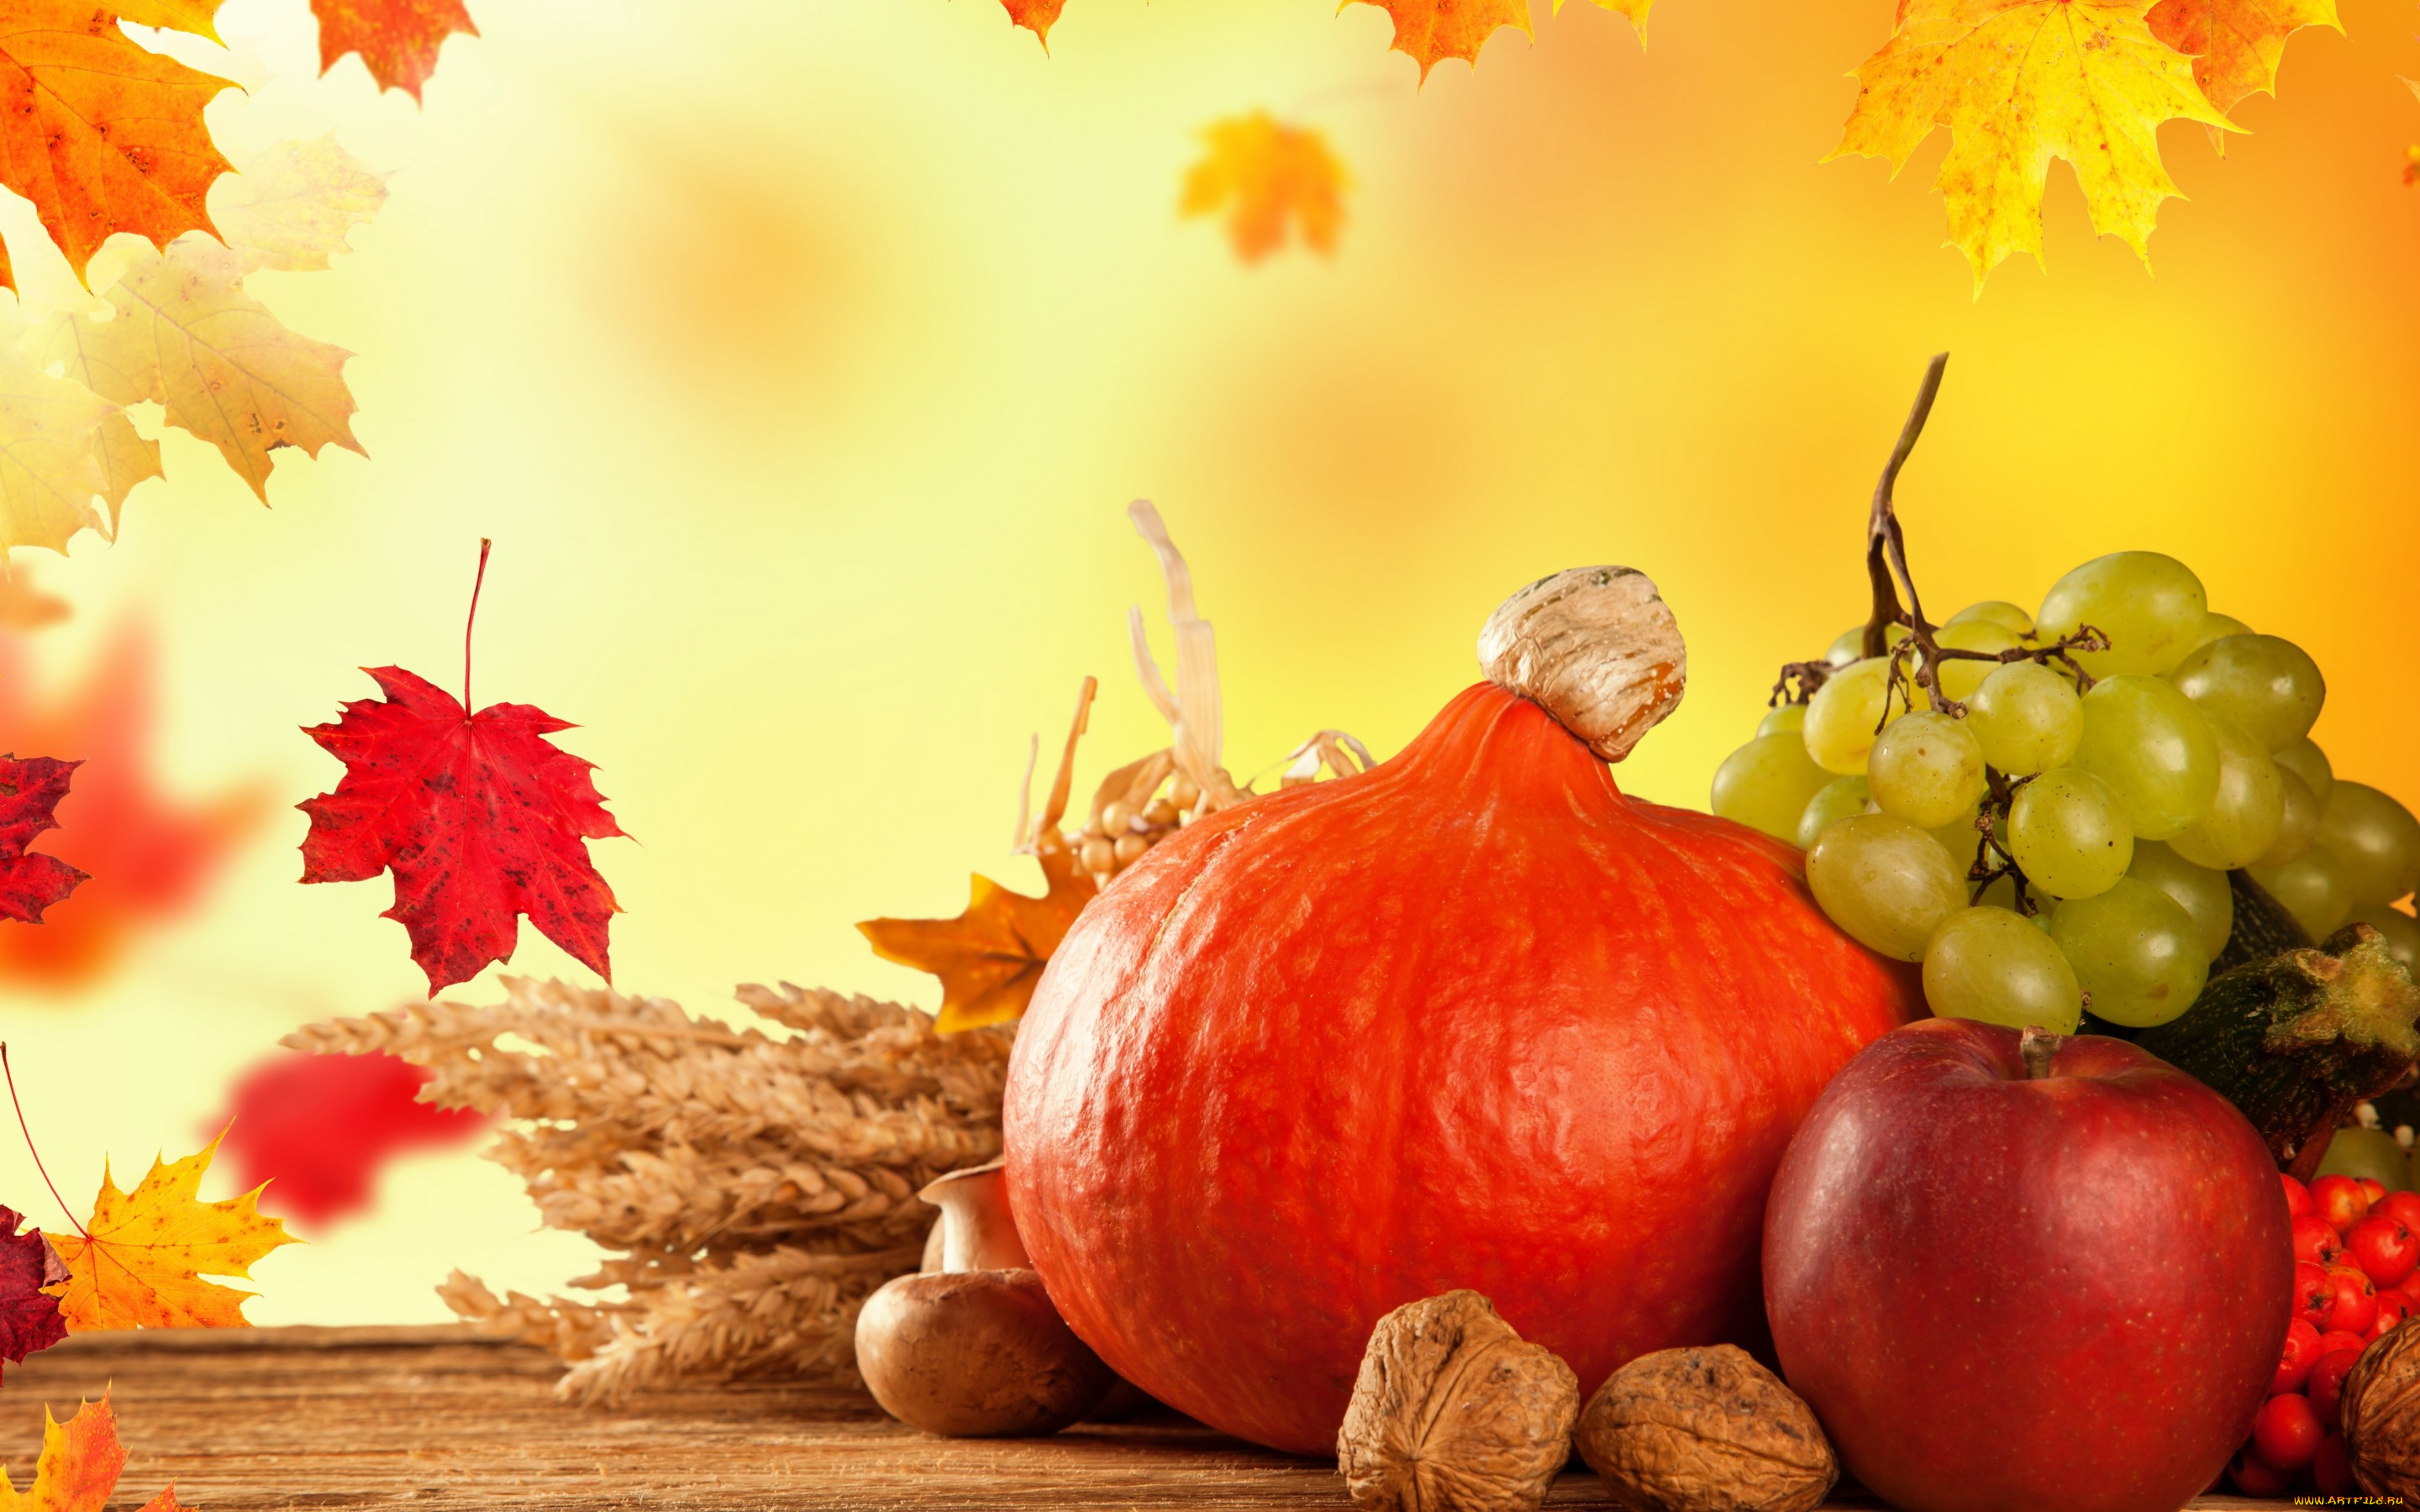 еда, фрукты, и, овощи, вместе, тыква, fruits, виноград, урожай, листья, осень, pumpkin, still, life, autumn, harvest